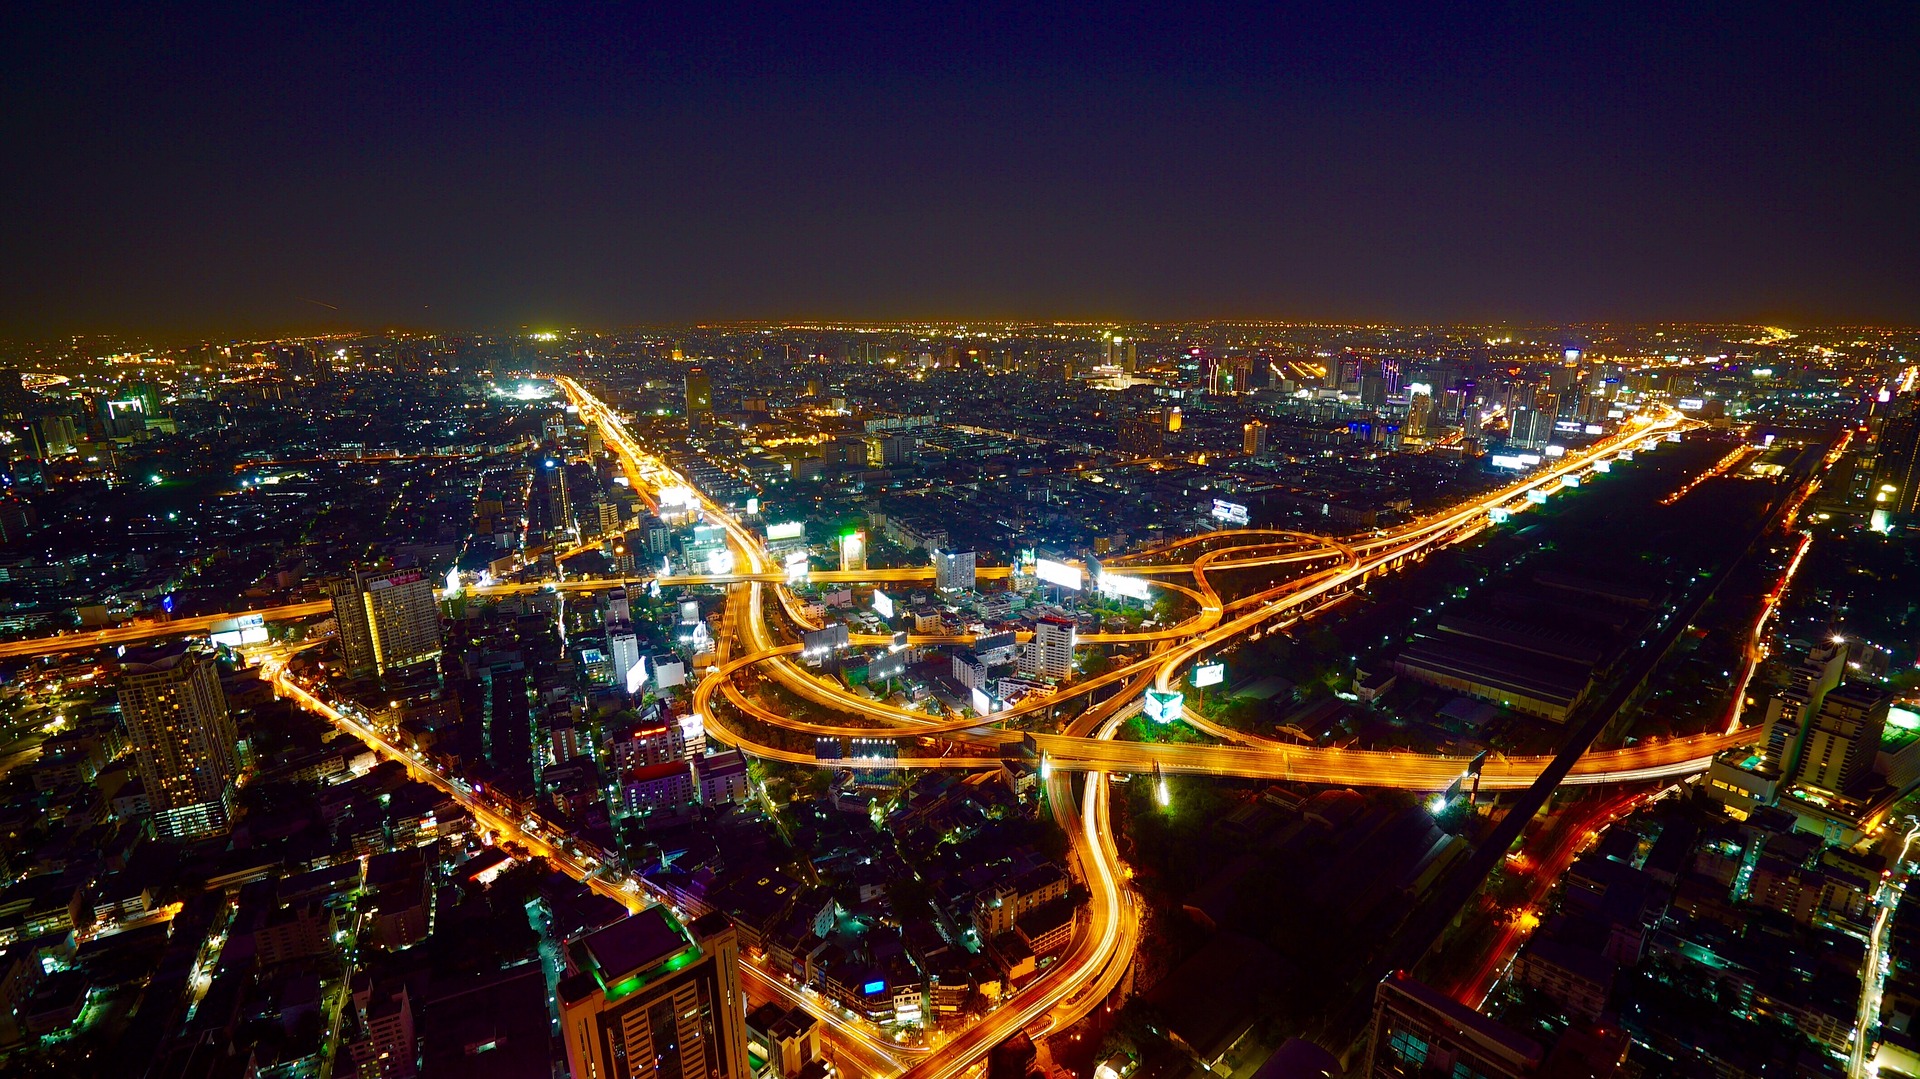 Aerial view of Bangkok, Thailand at night